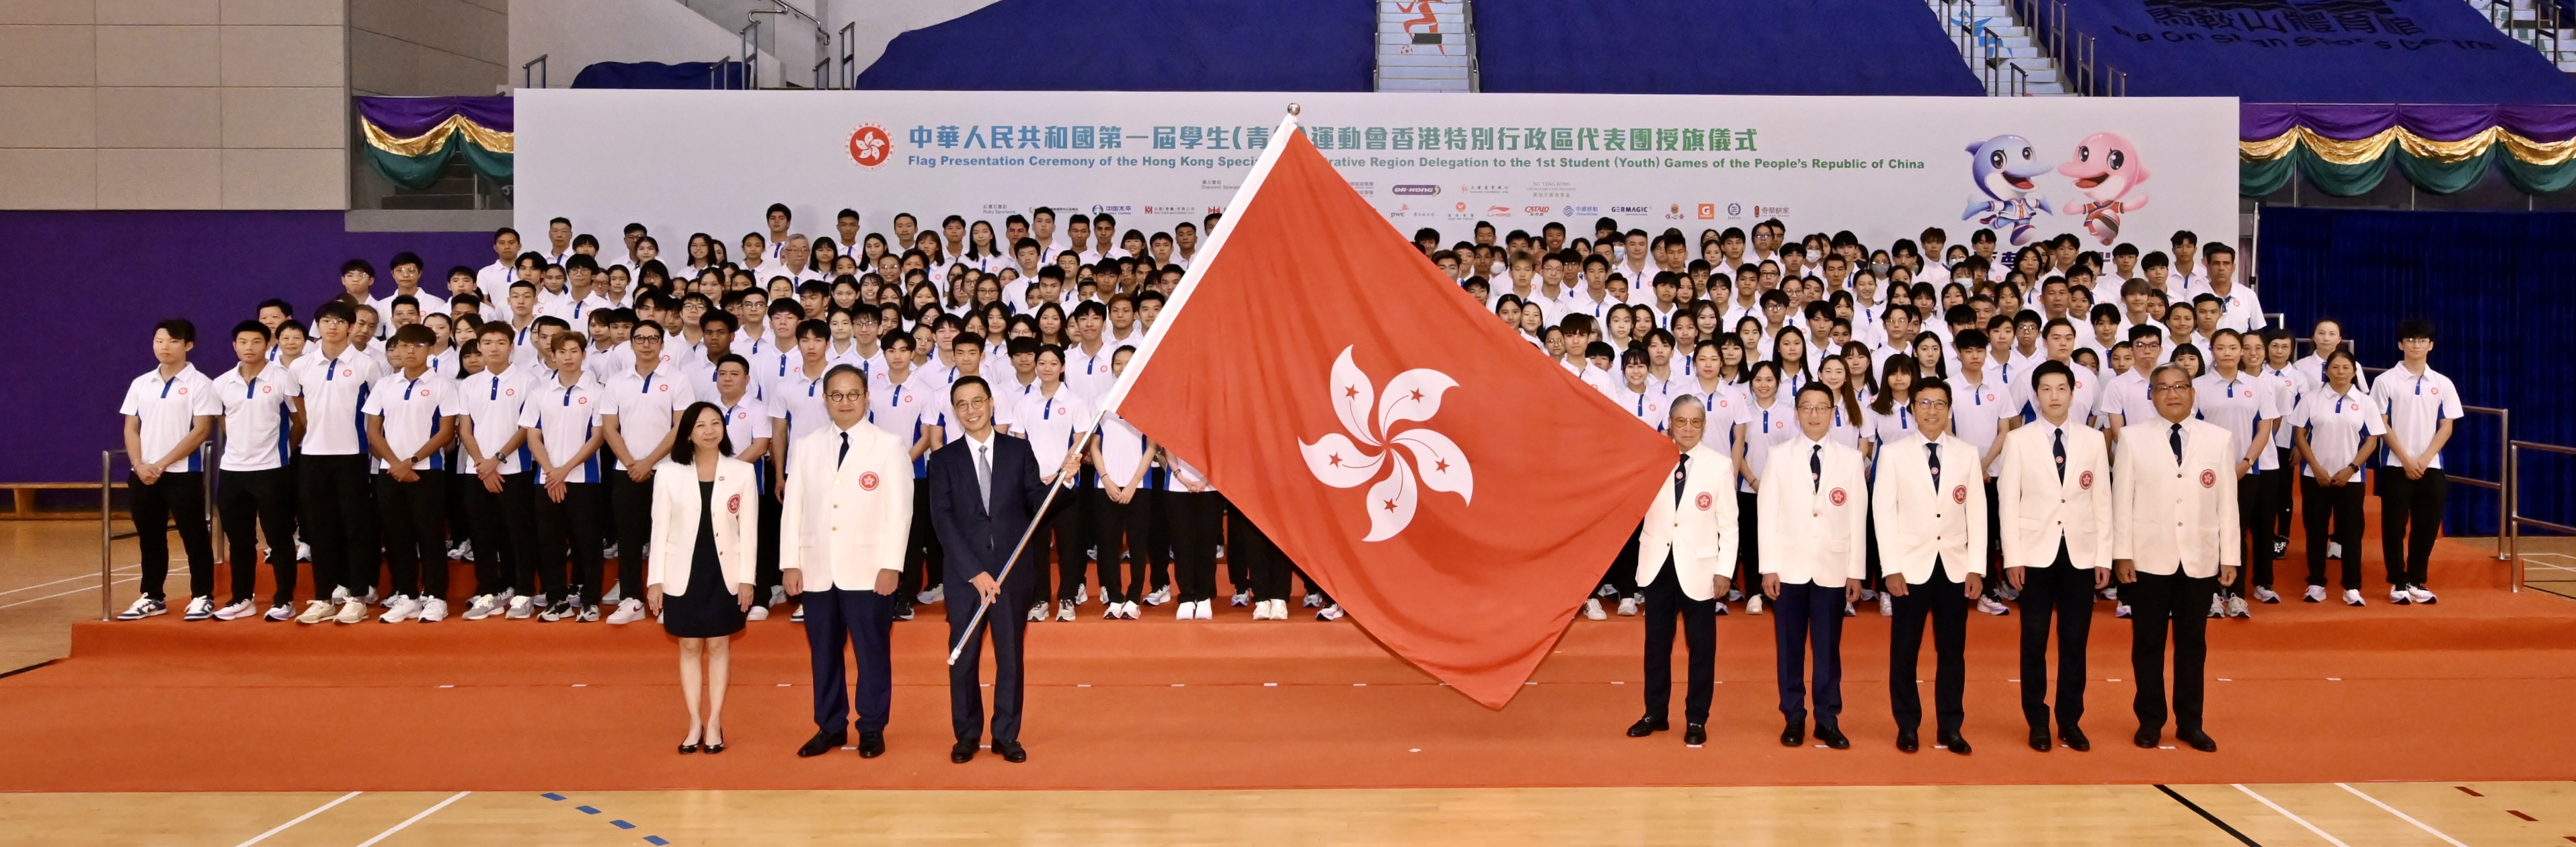 香港特別行政區代表團授旗儀式1